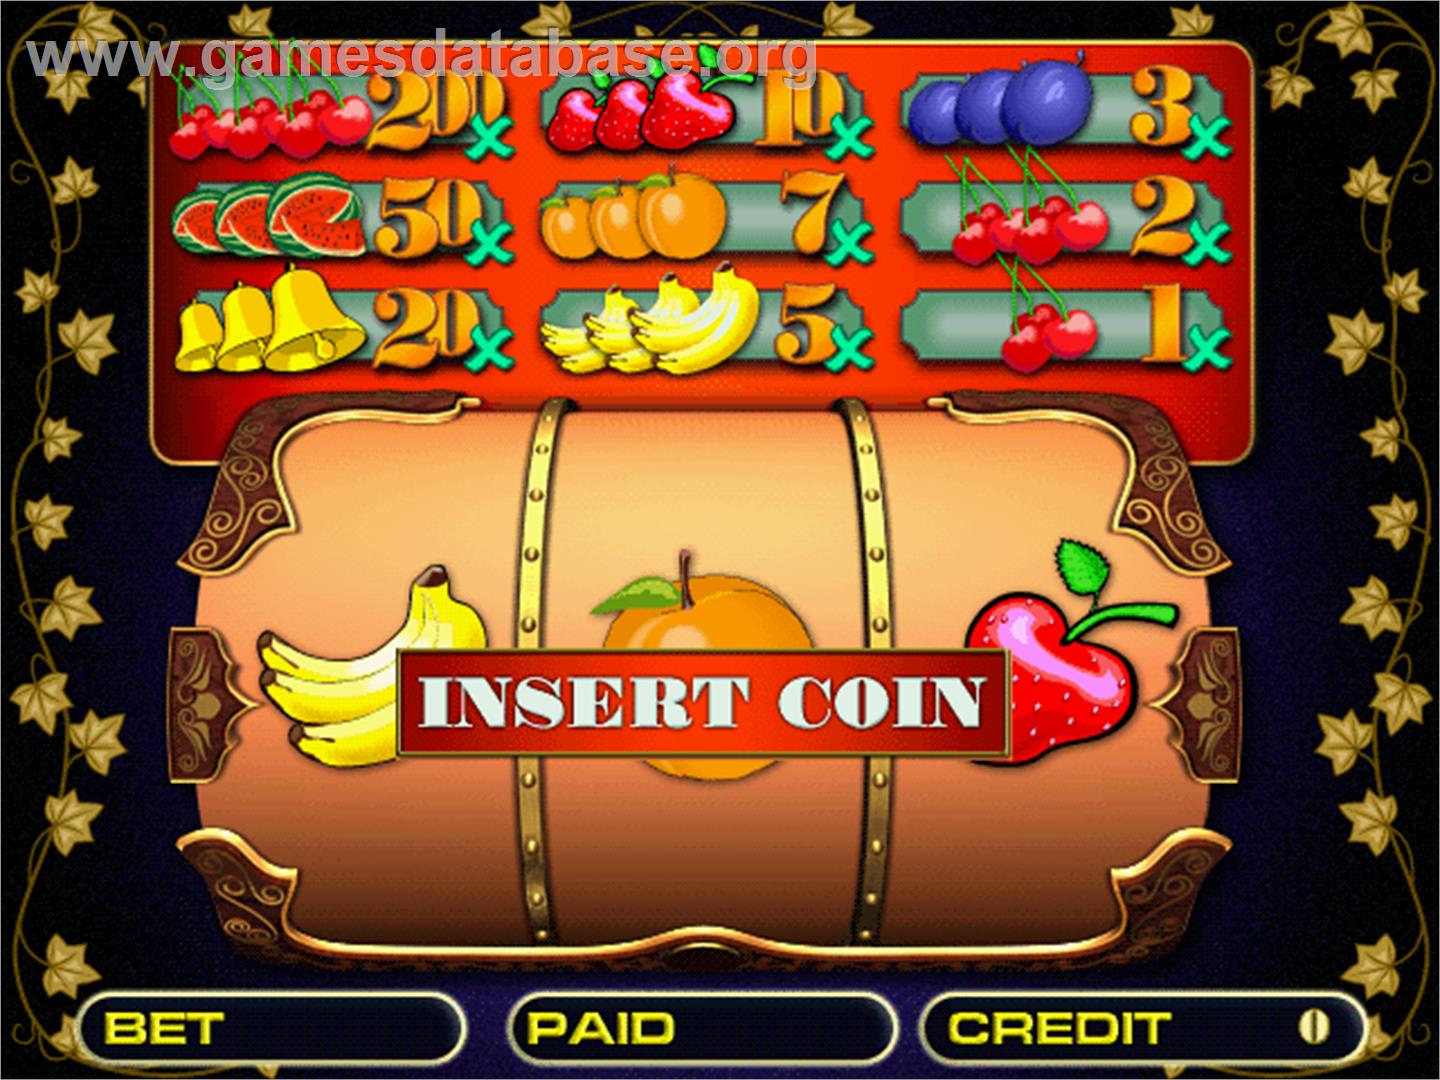 Roll Fruit - Arcade - Artwork - Title Screen